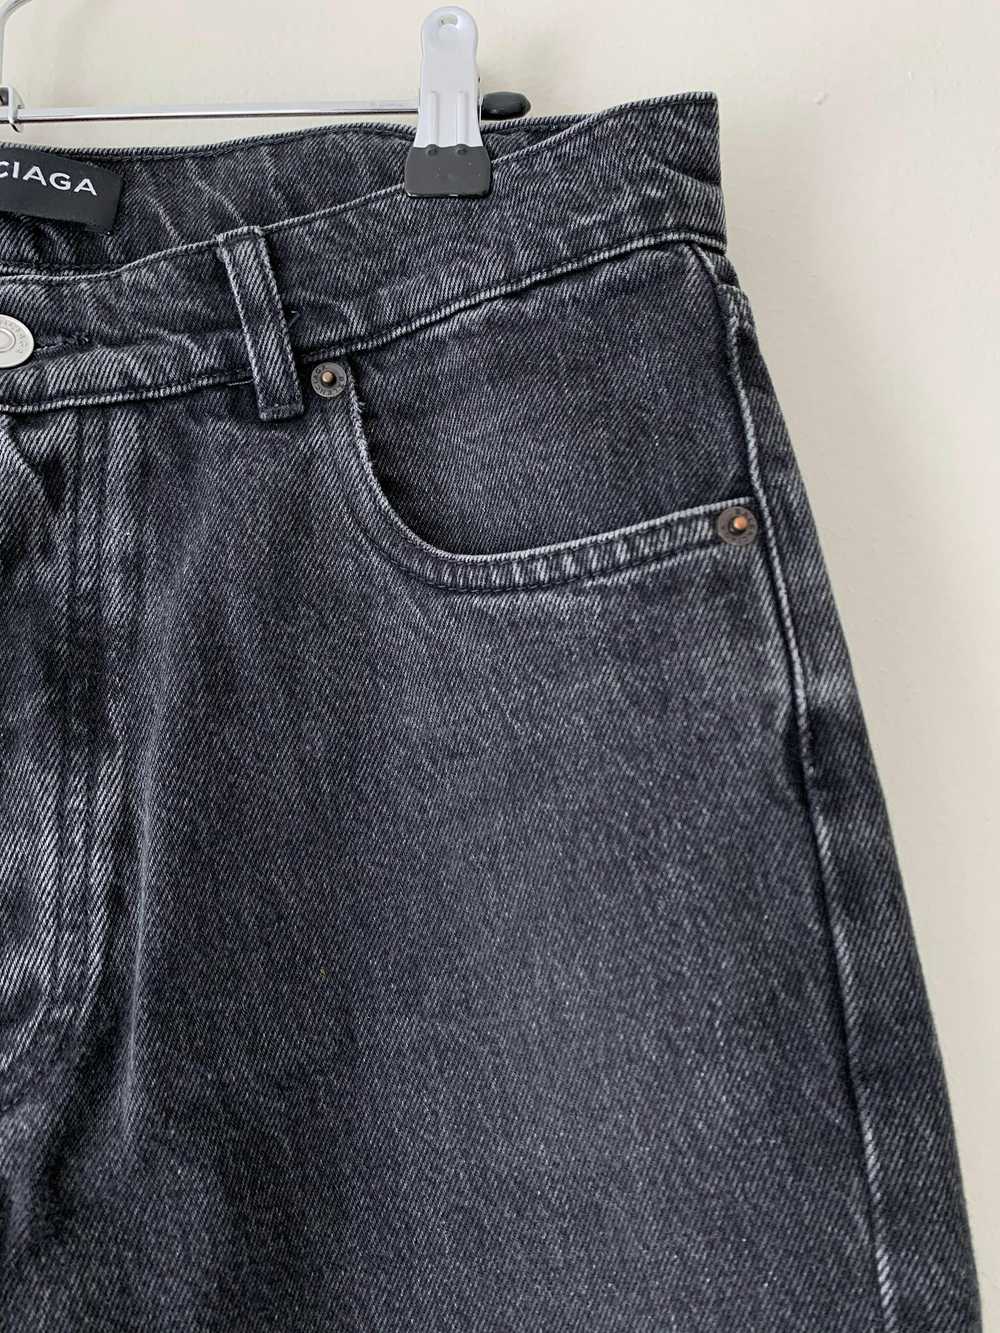 Balenciaga SS18 Washed Grey Jeans - image 3